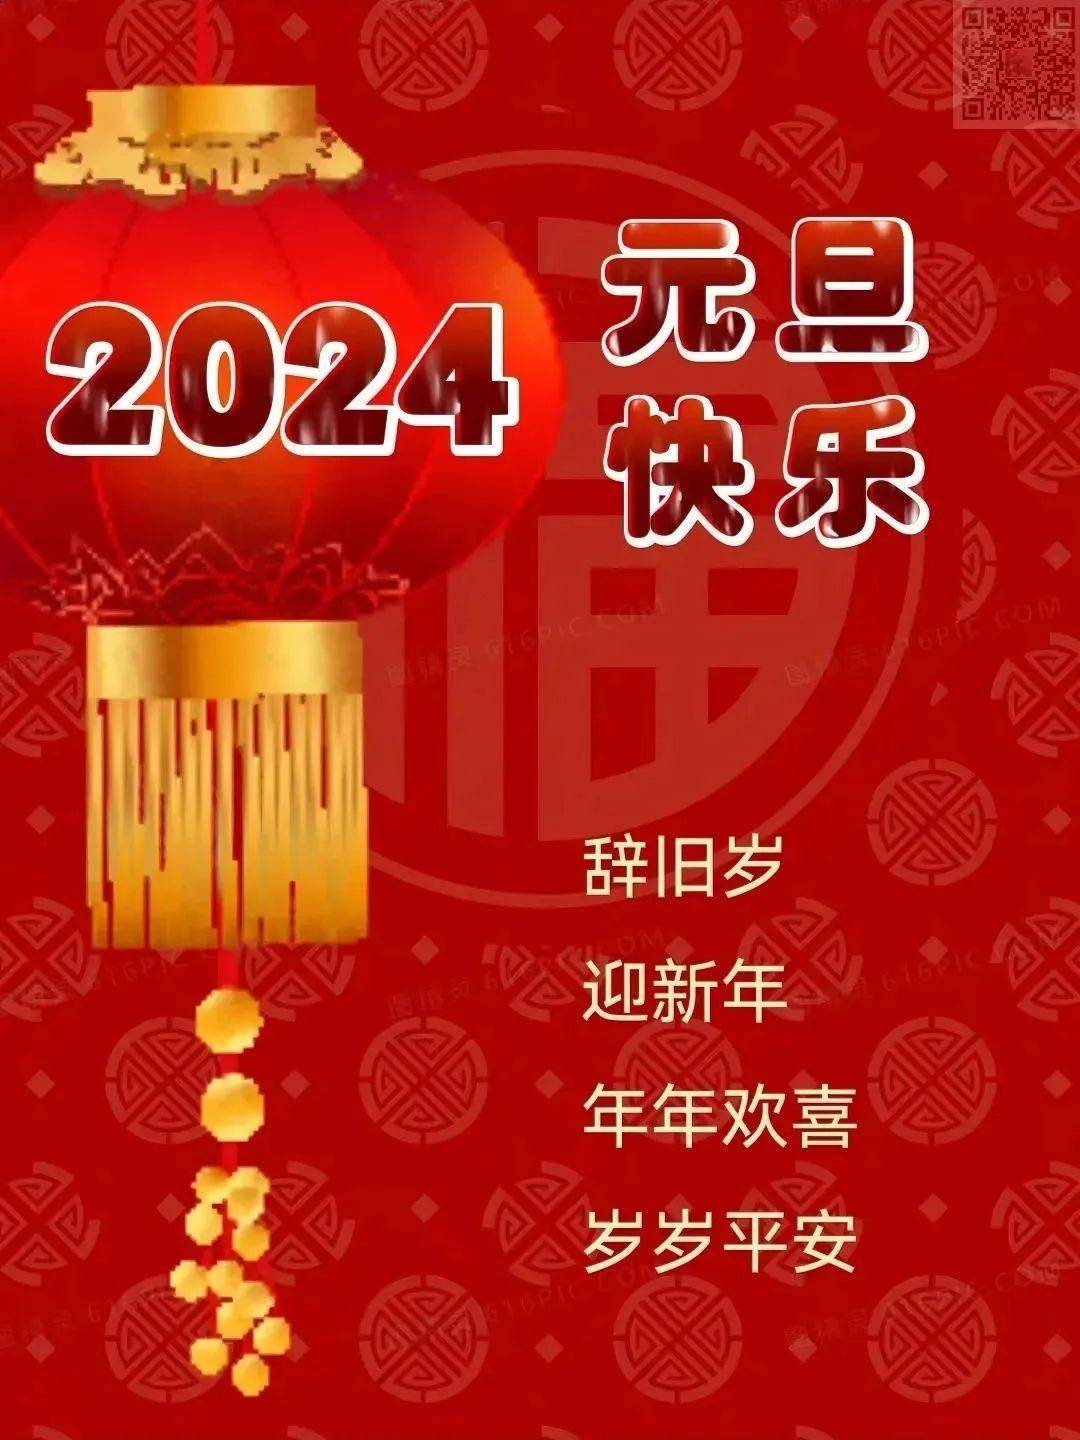 2024年元旦快乐祝福语图片大全,2024龙年新年快乐问候语短句精选大全